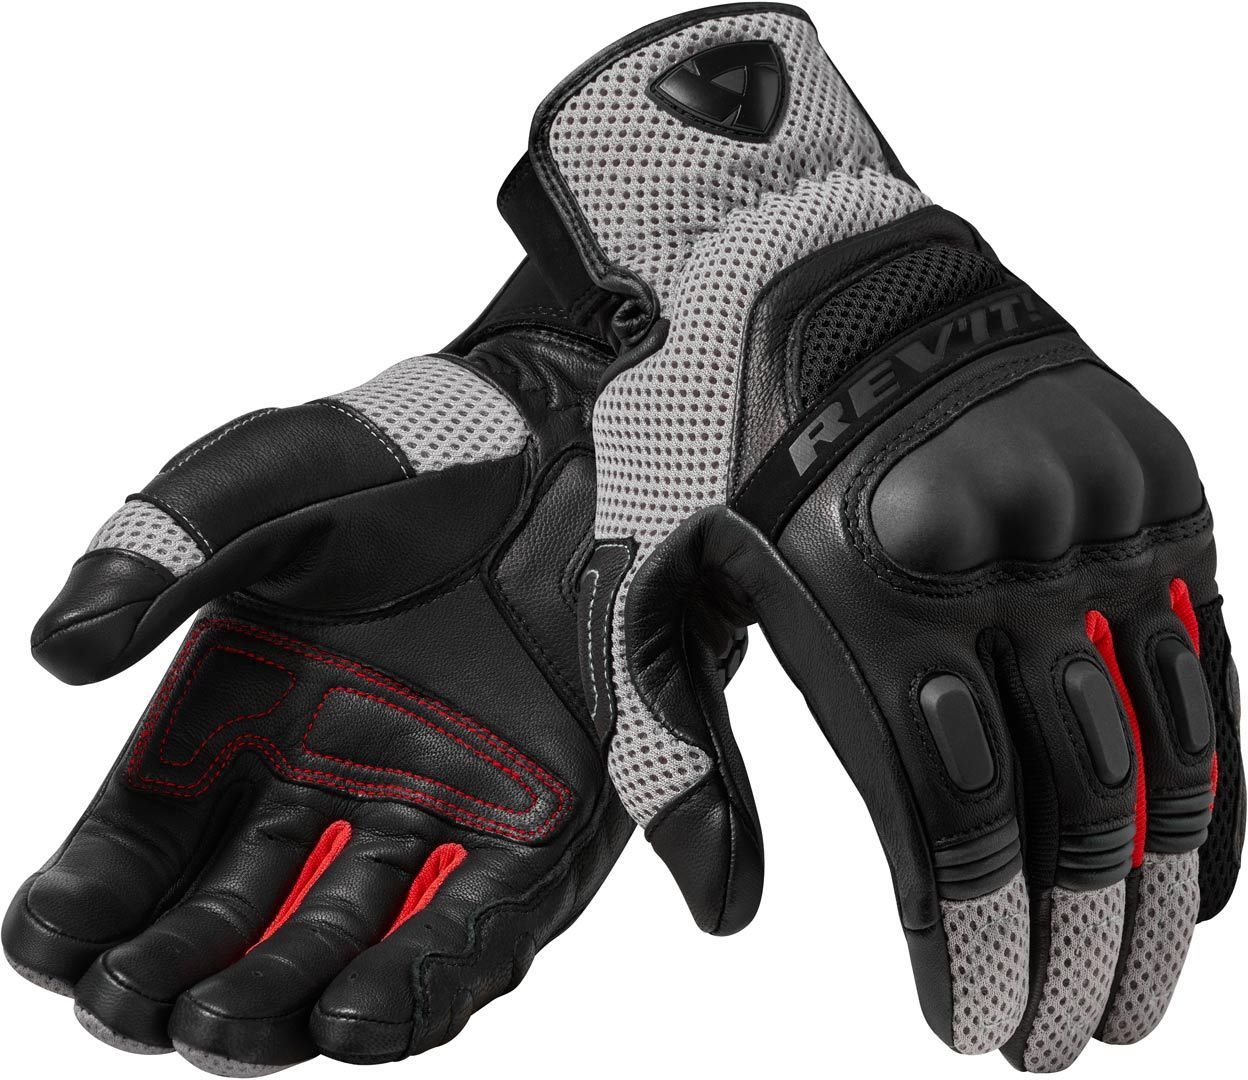 Revit Dirt 3 Motocross Handschuhe, schwarz-rot, Größe L, schwarz-rot, Größe L